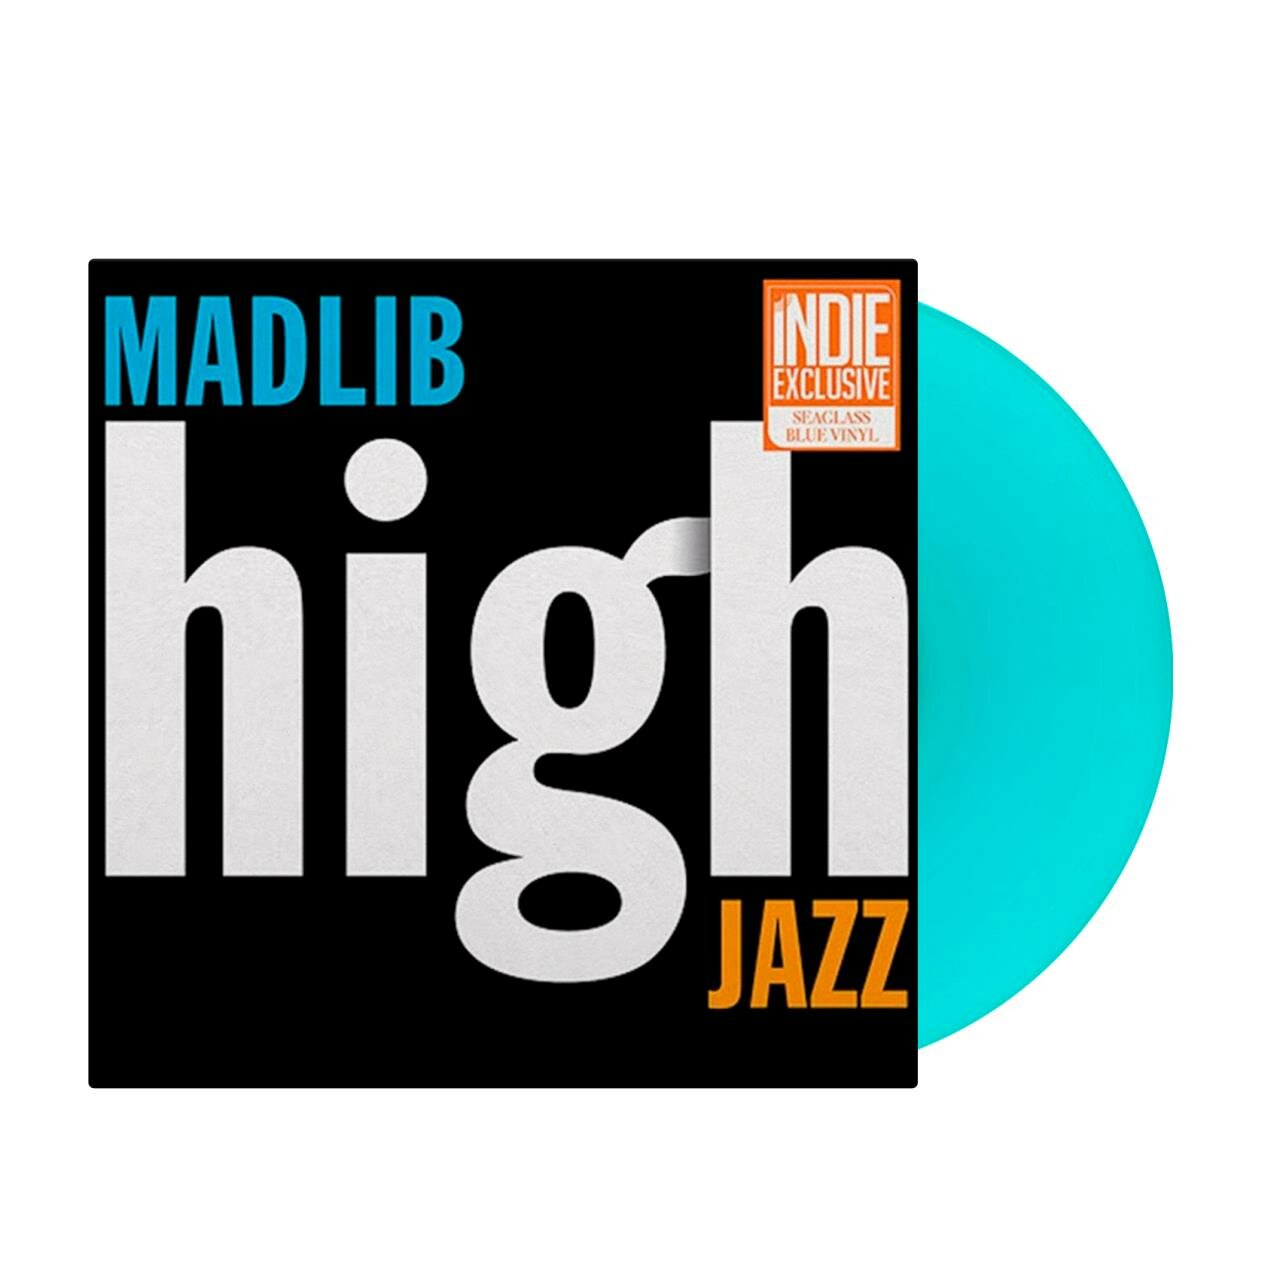 Виниловая пластинка Madlib - High Jazz (Blue Sea Glass)